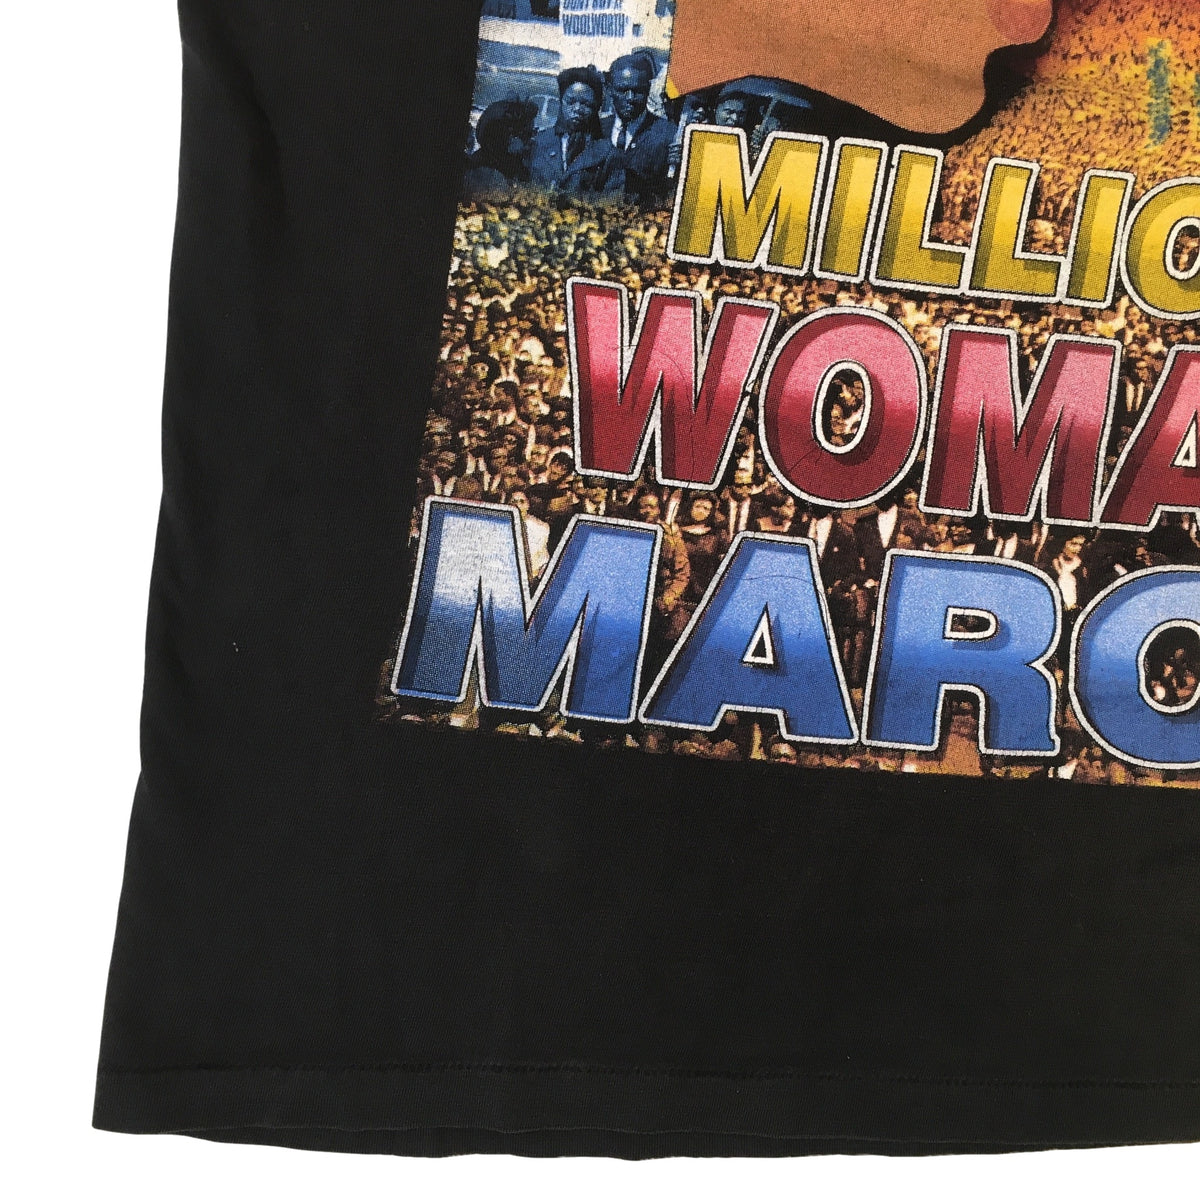 Vintage Million Woman March &quot;Philadelphia&quot; T-Shirt - jointcustodydc